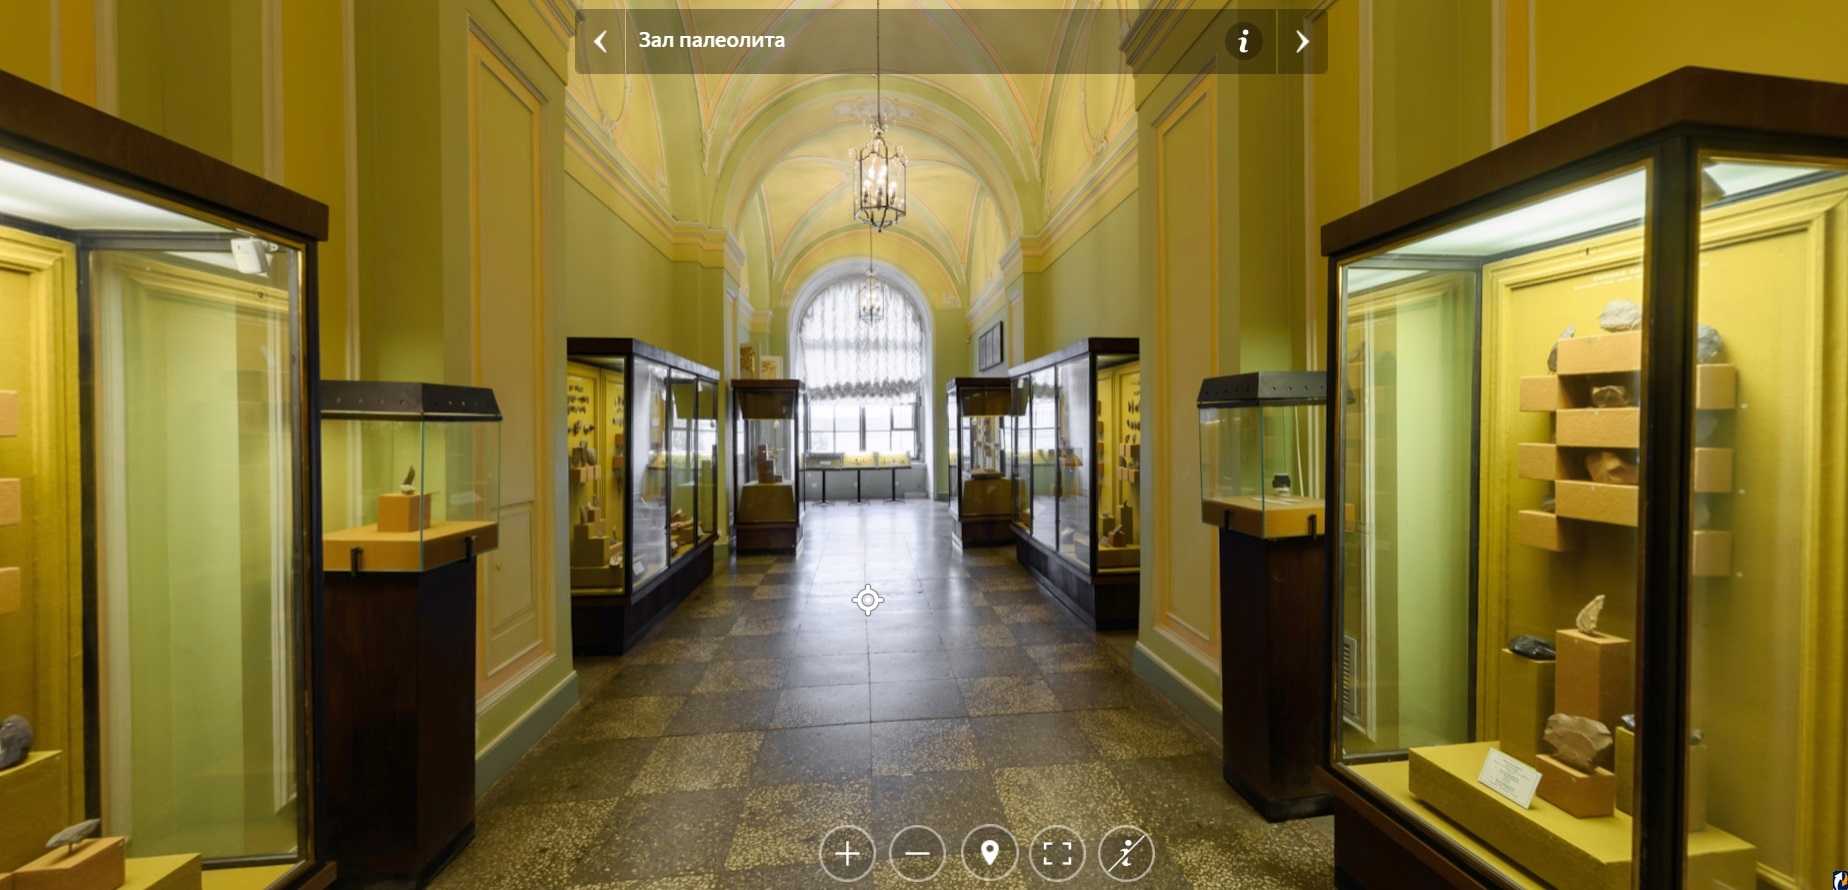 Как приобщиться к прекрасному, не вставая с дивана: виртуальные музеи и онлайн-галереи